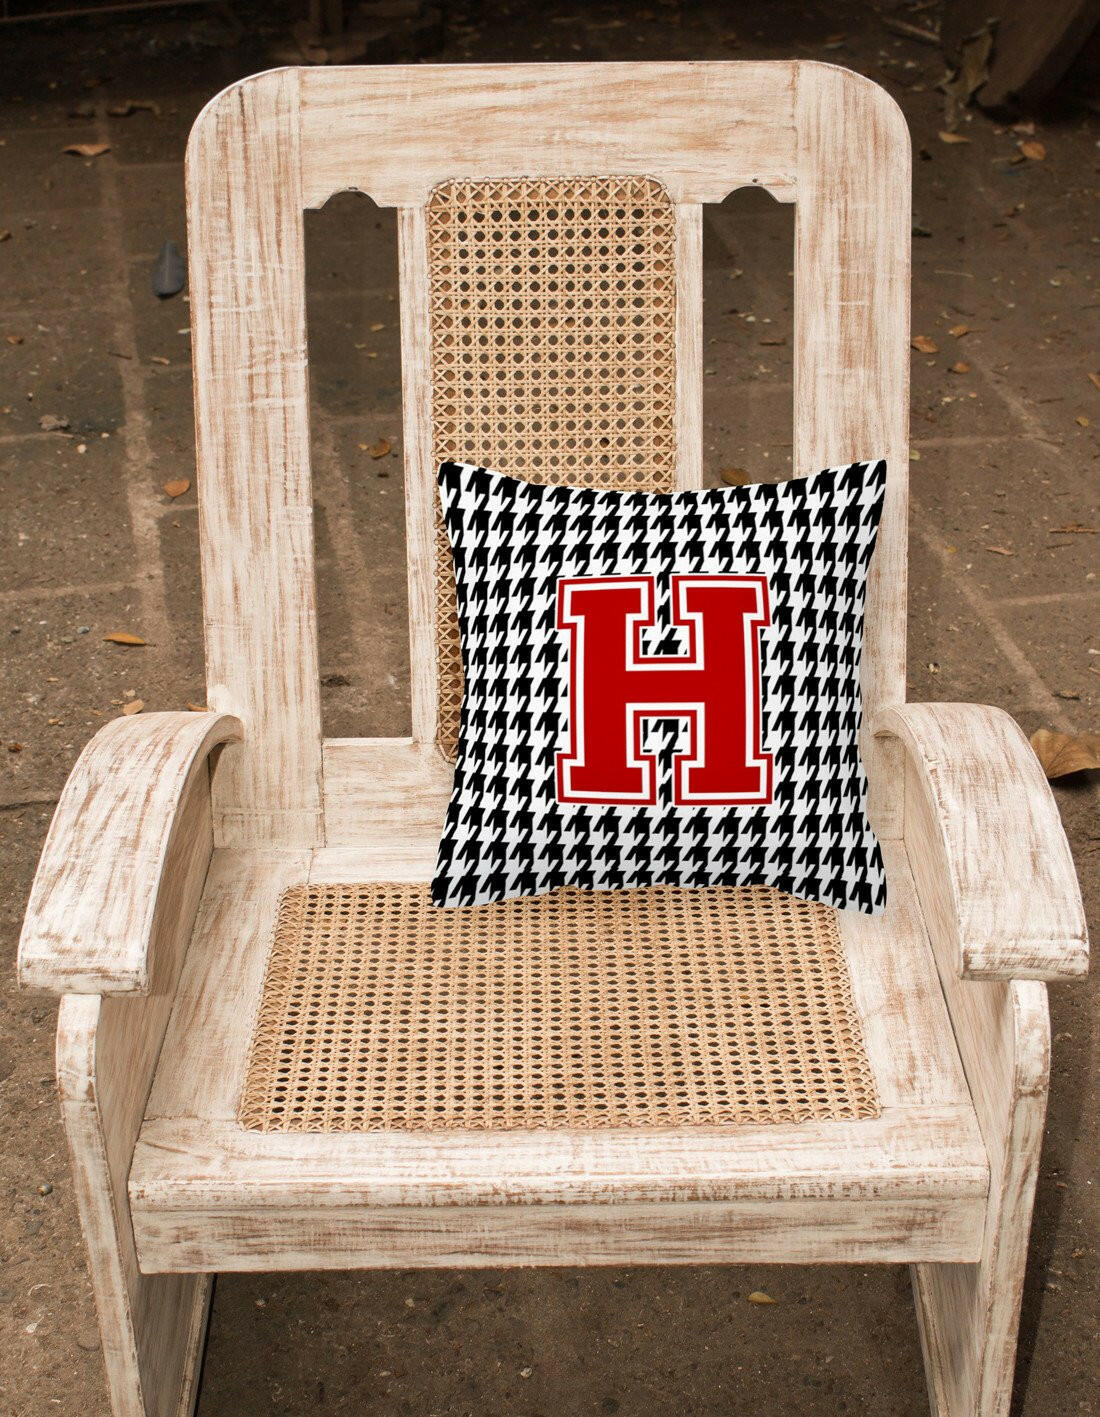 Monogram - Initial H Houndstooth Decorative   Canvas Fabric Pillow CJ1021 - the-store.com